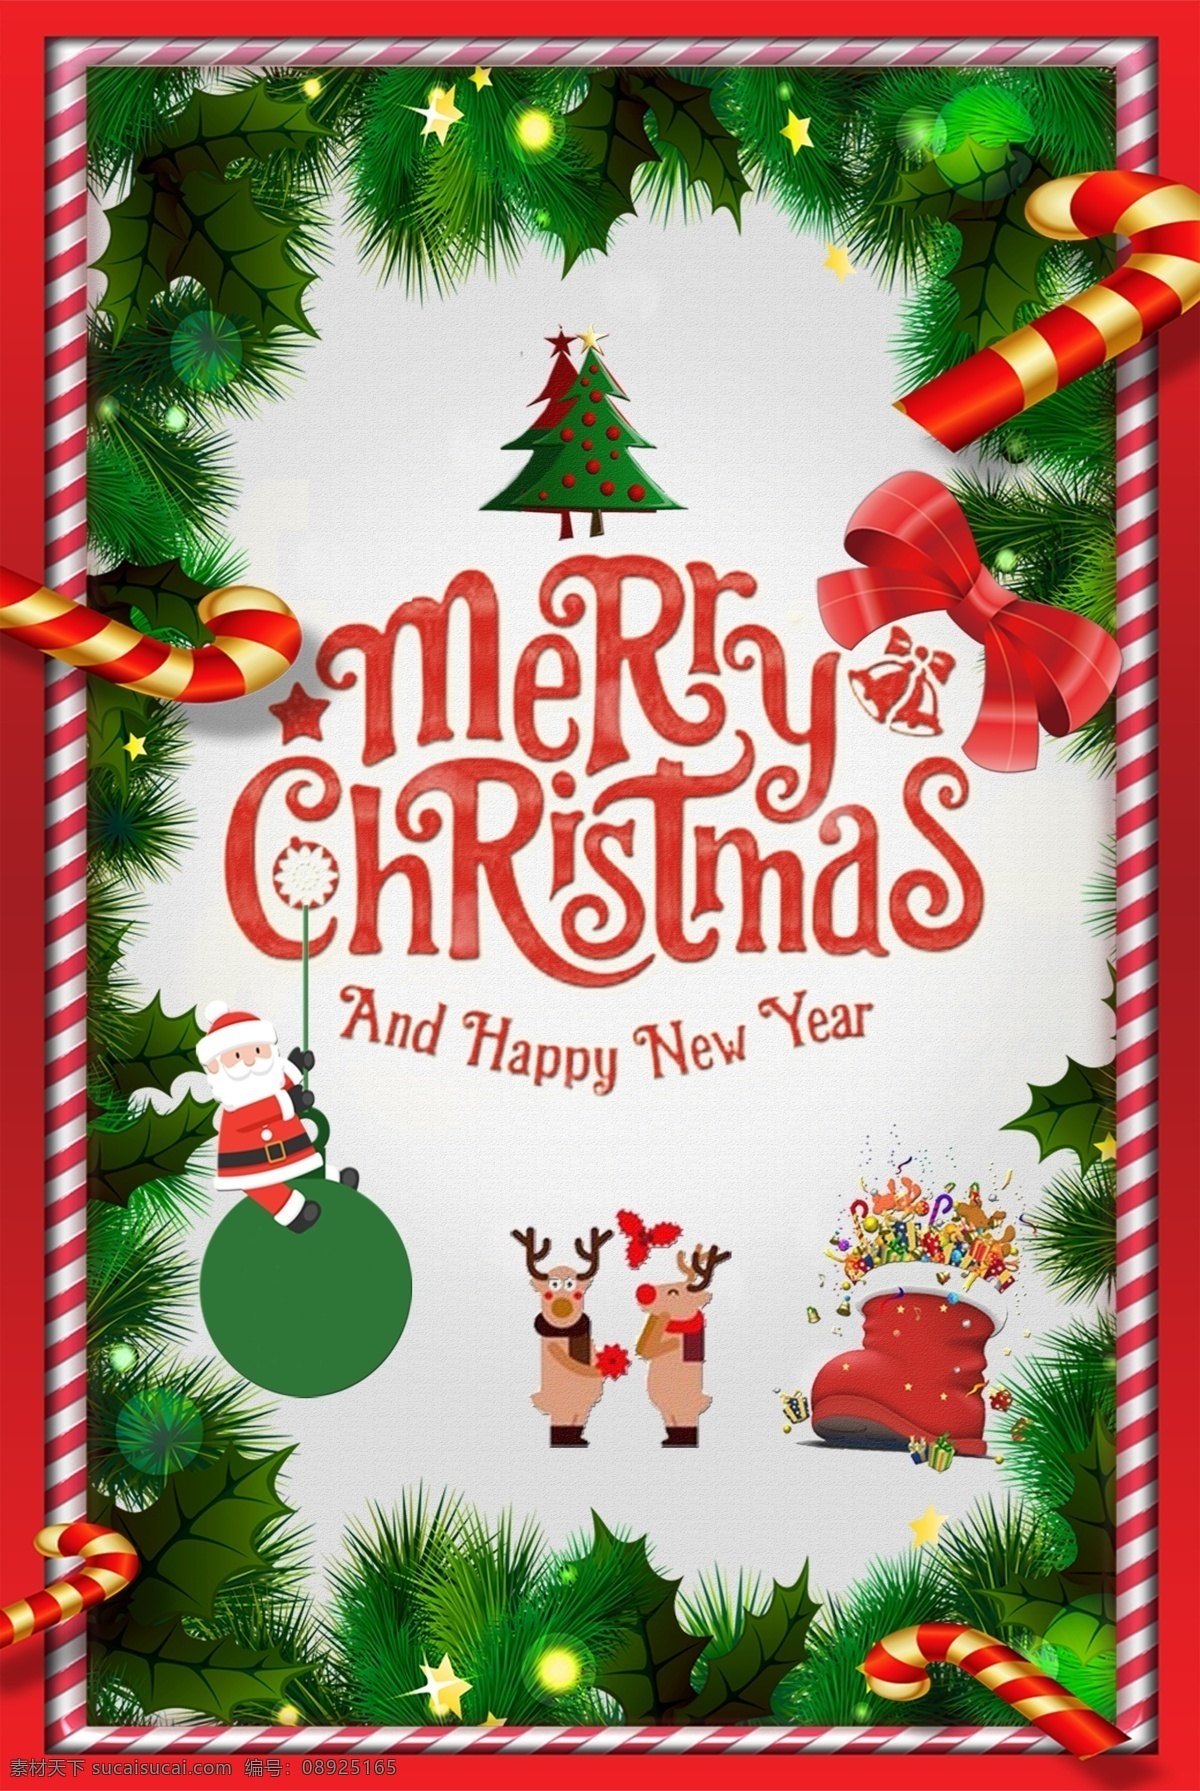 2017 年 棒棒糖 蓝绿色 圣诞节 海报 设计模板 模板 快乐 创意 促销 创意圣诞节 喜庆 圣诞素材设计 创意模板 创意圣诞